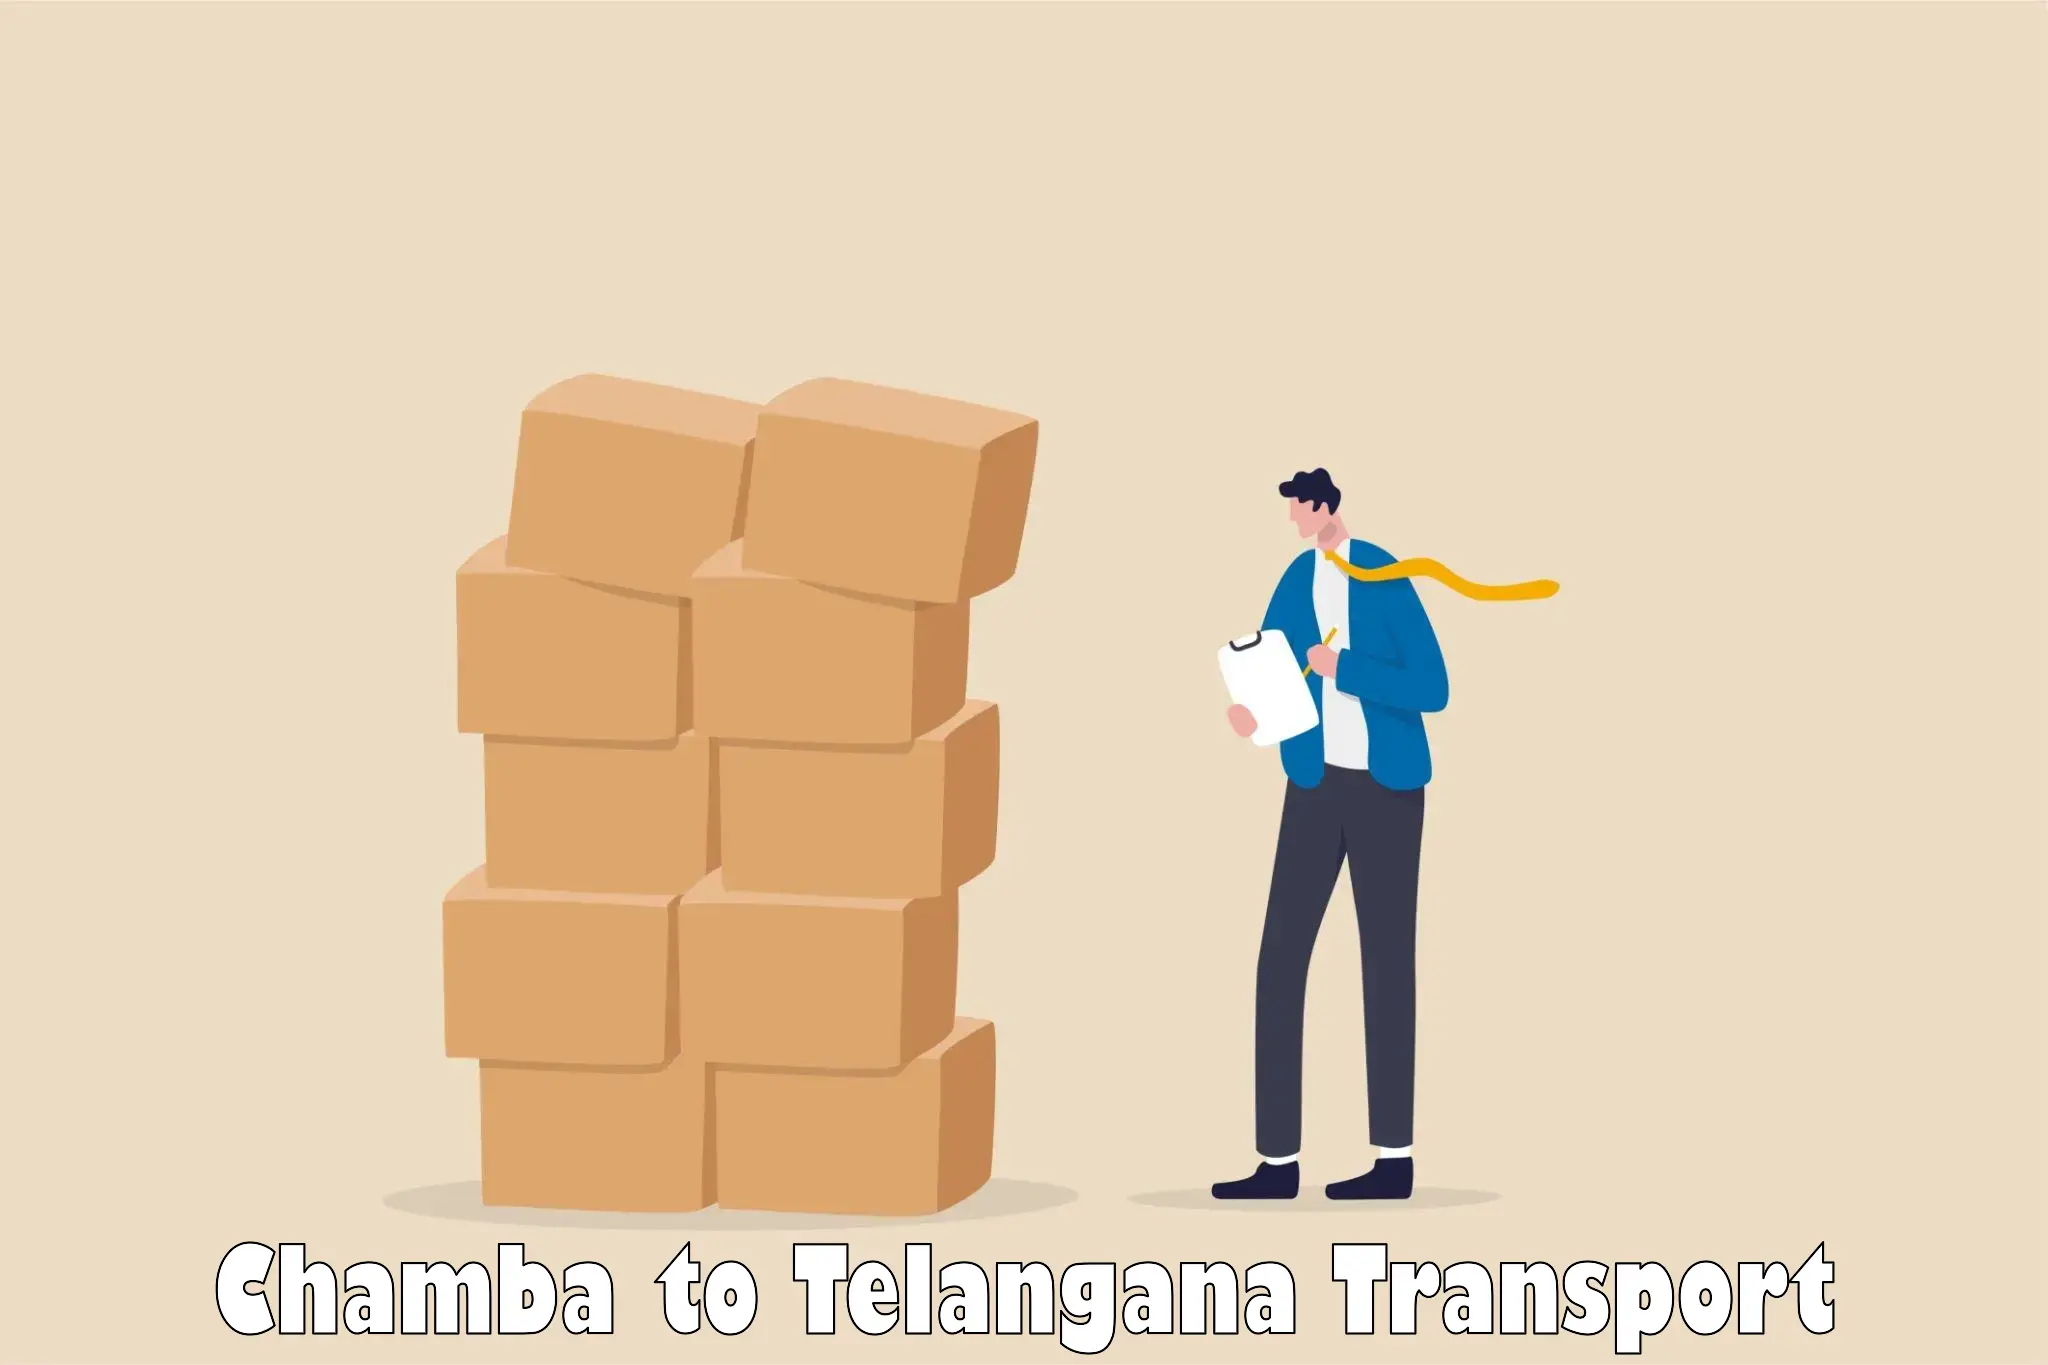 Nearby transport service Chamba to Chandur